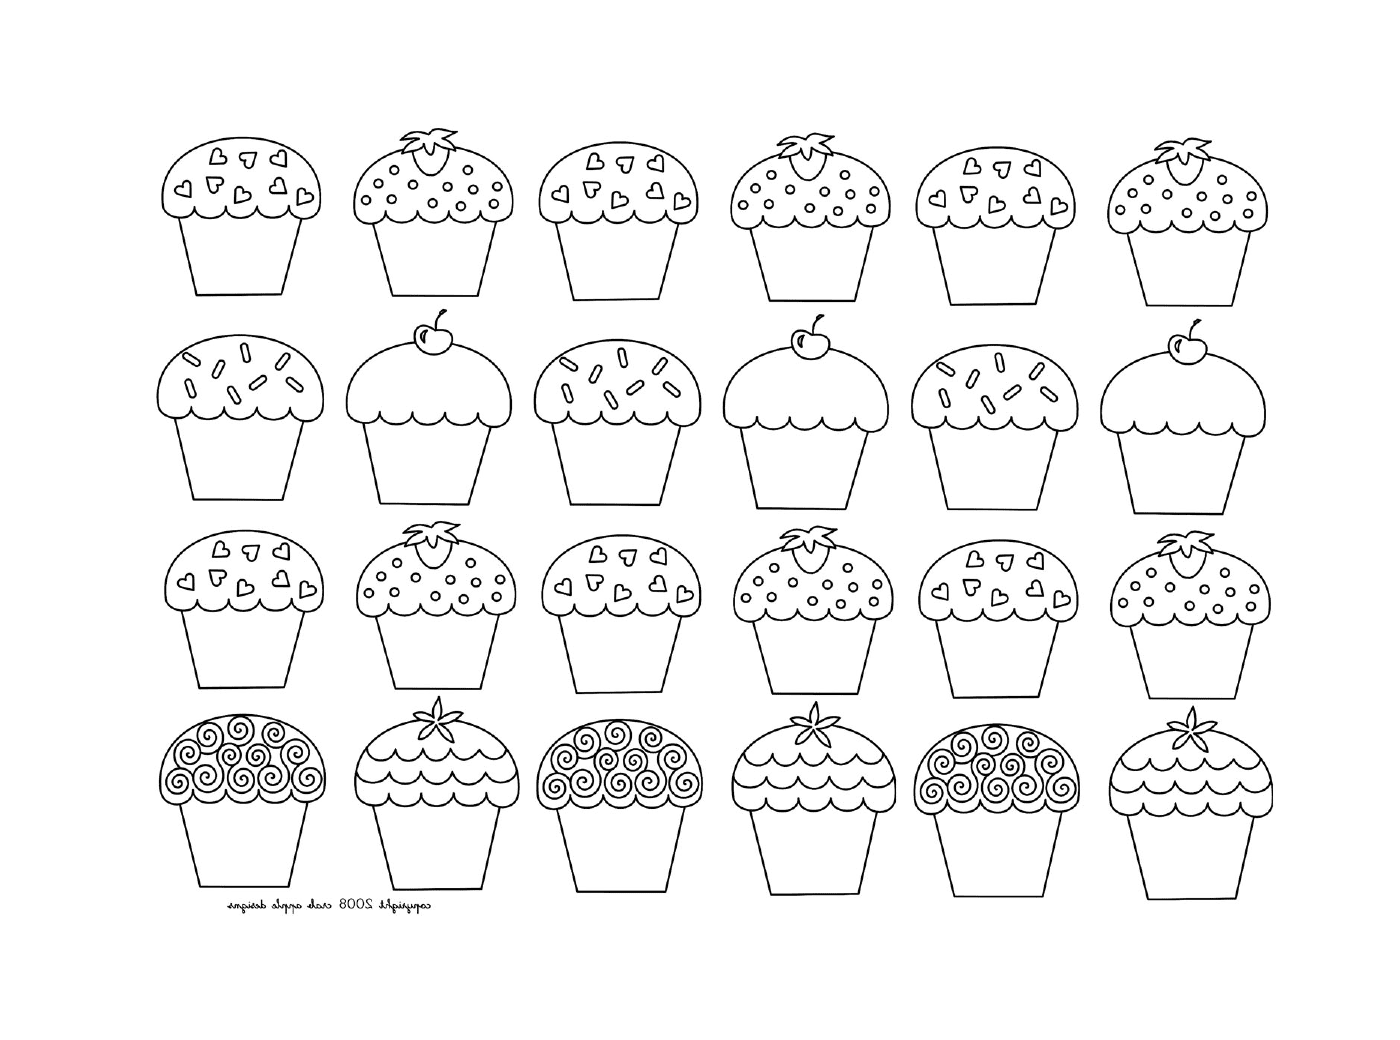   Une mosaïque de cupcakes enfantins, de différents types 